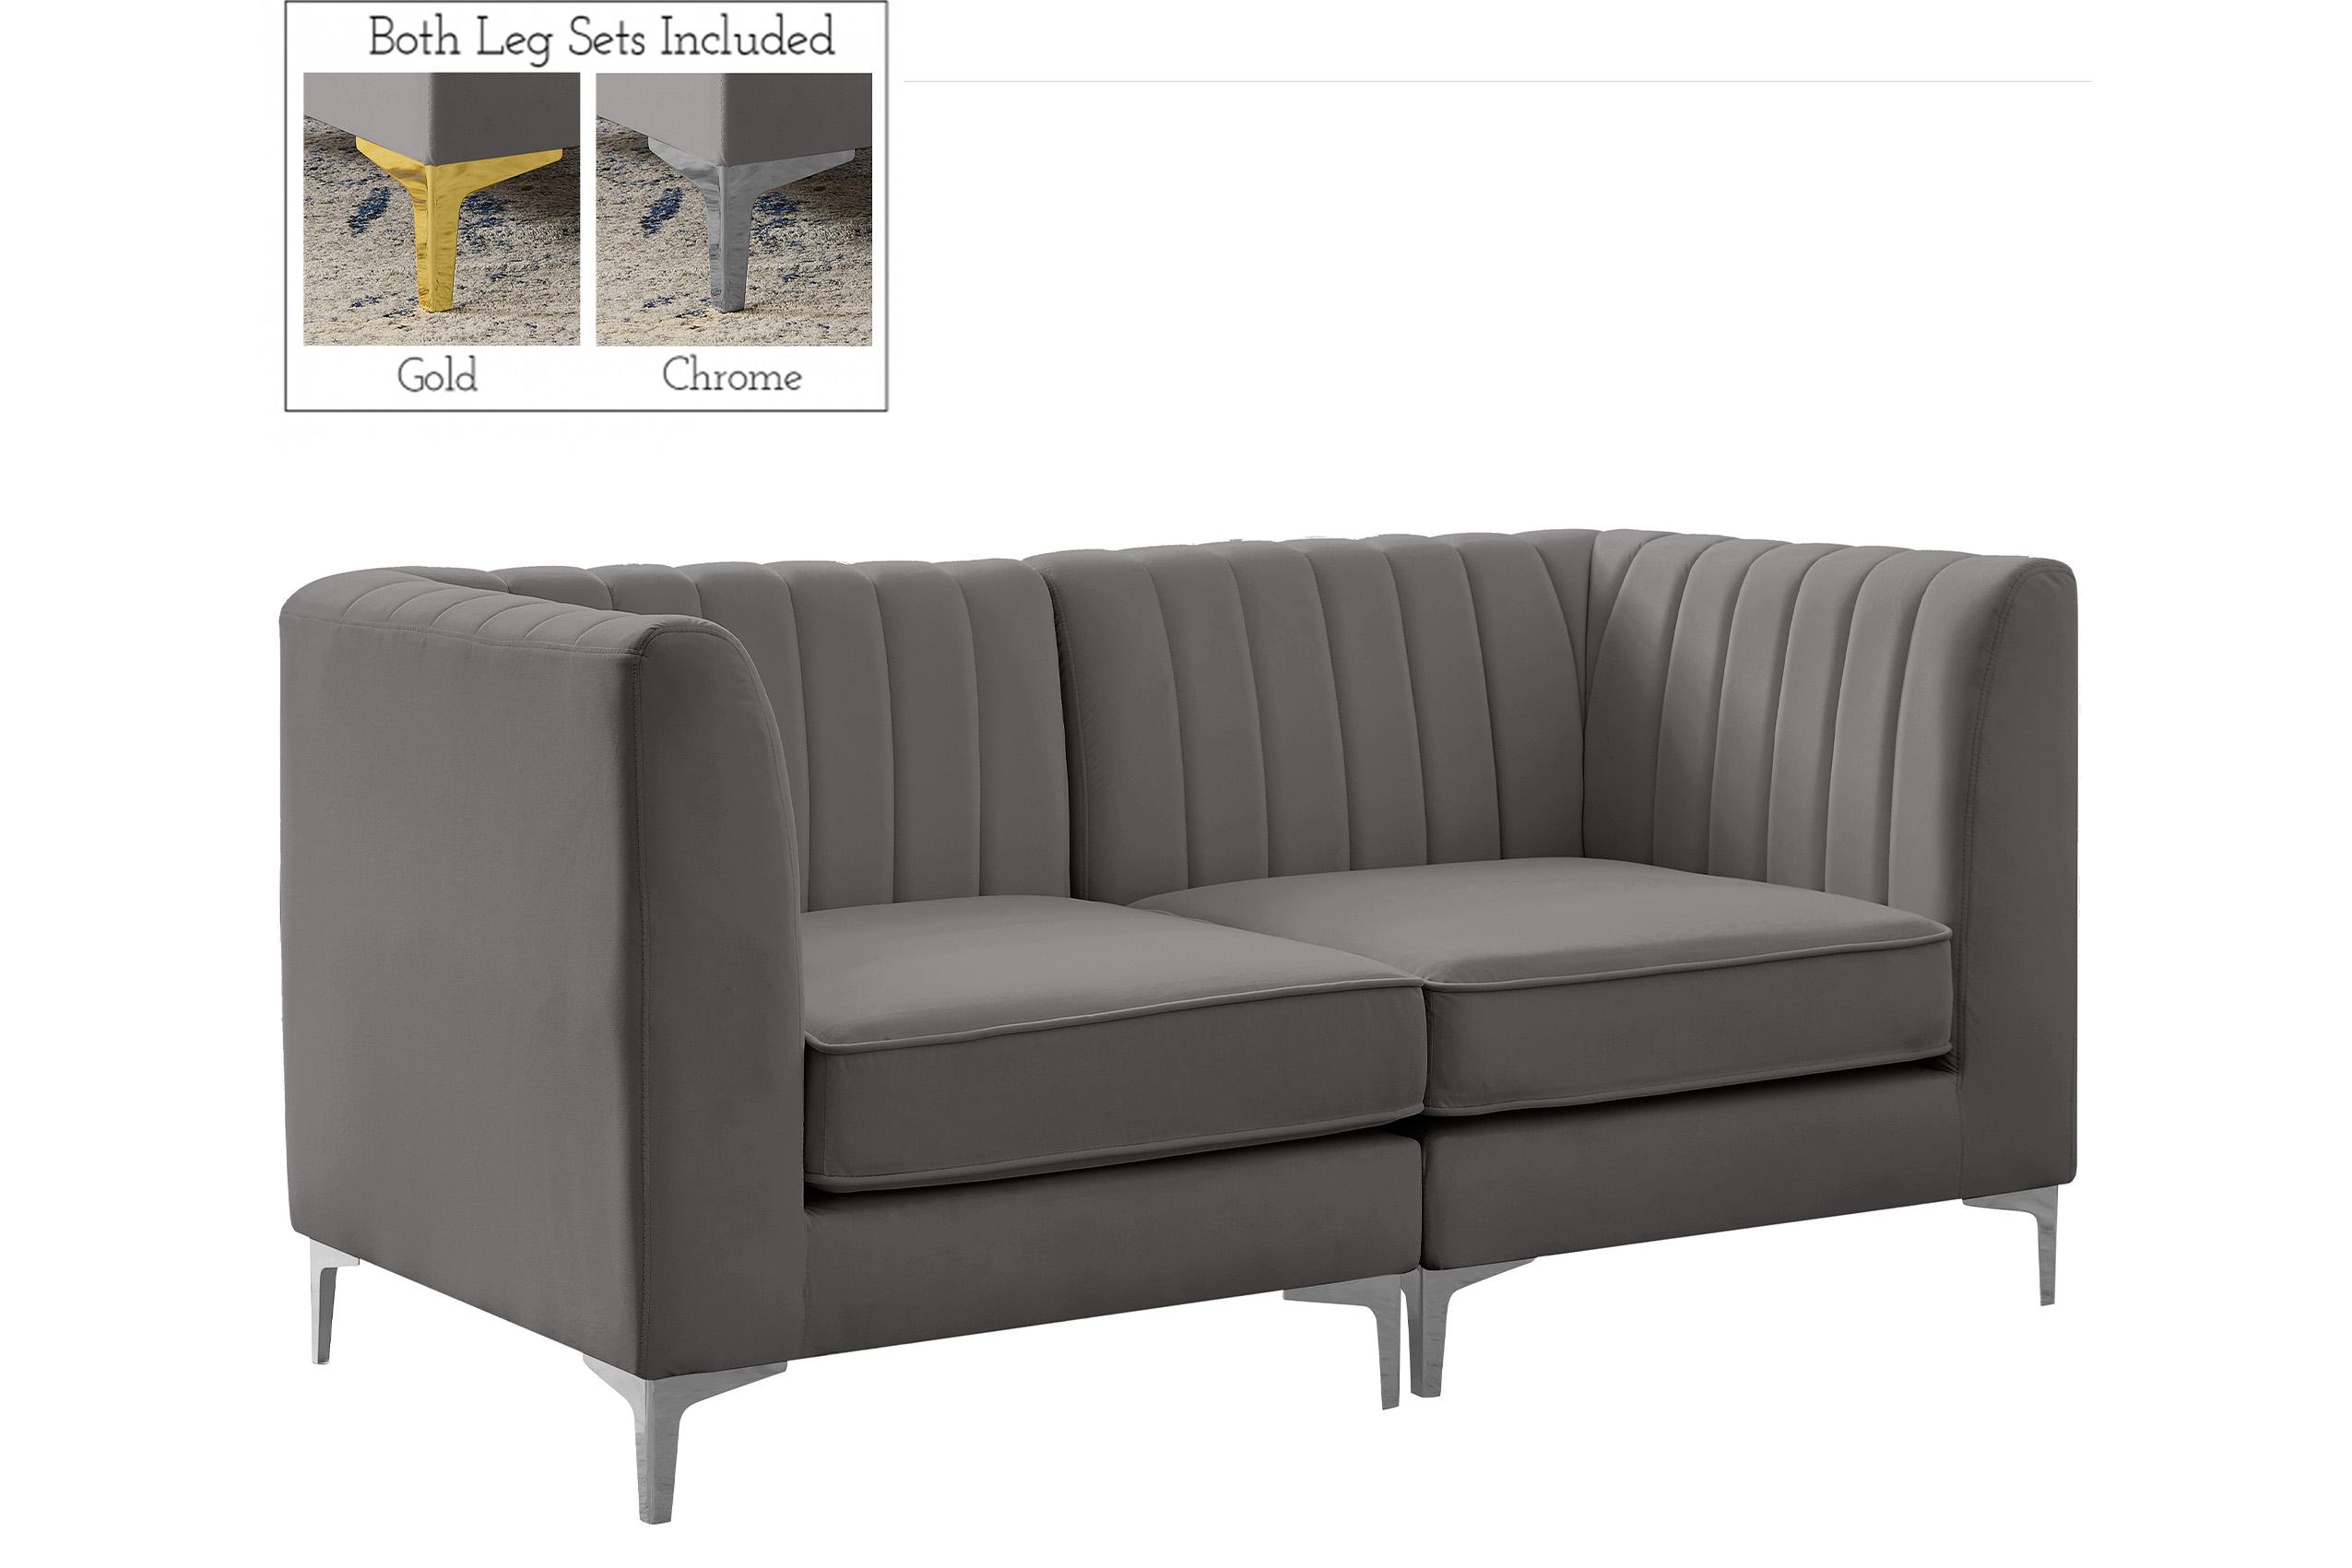 Contemporary, Modern Modular Sectional Sofa ALINA 604Grey-S67 604Grey-S67 in Gray Velvet